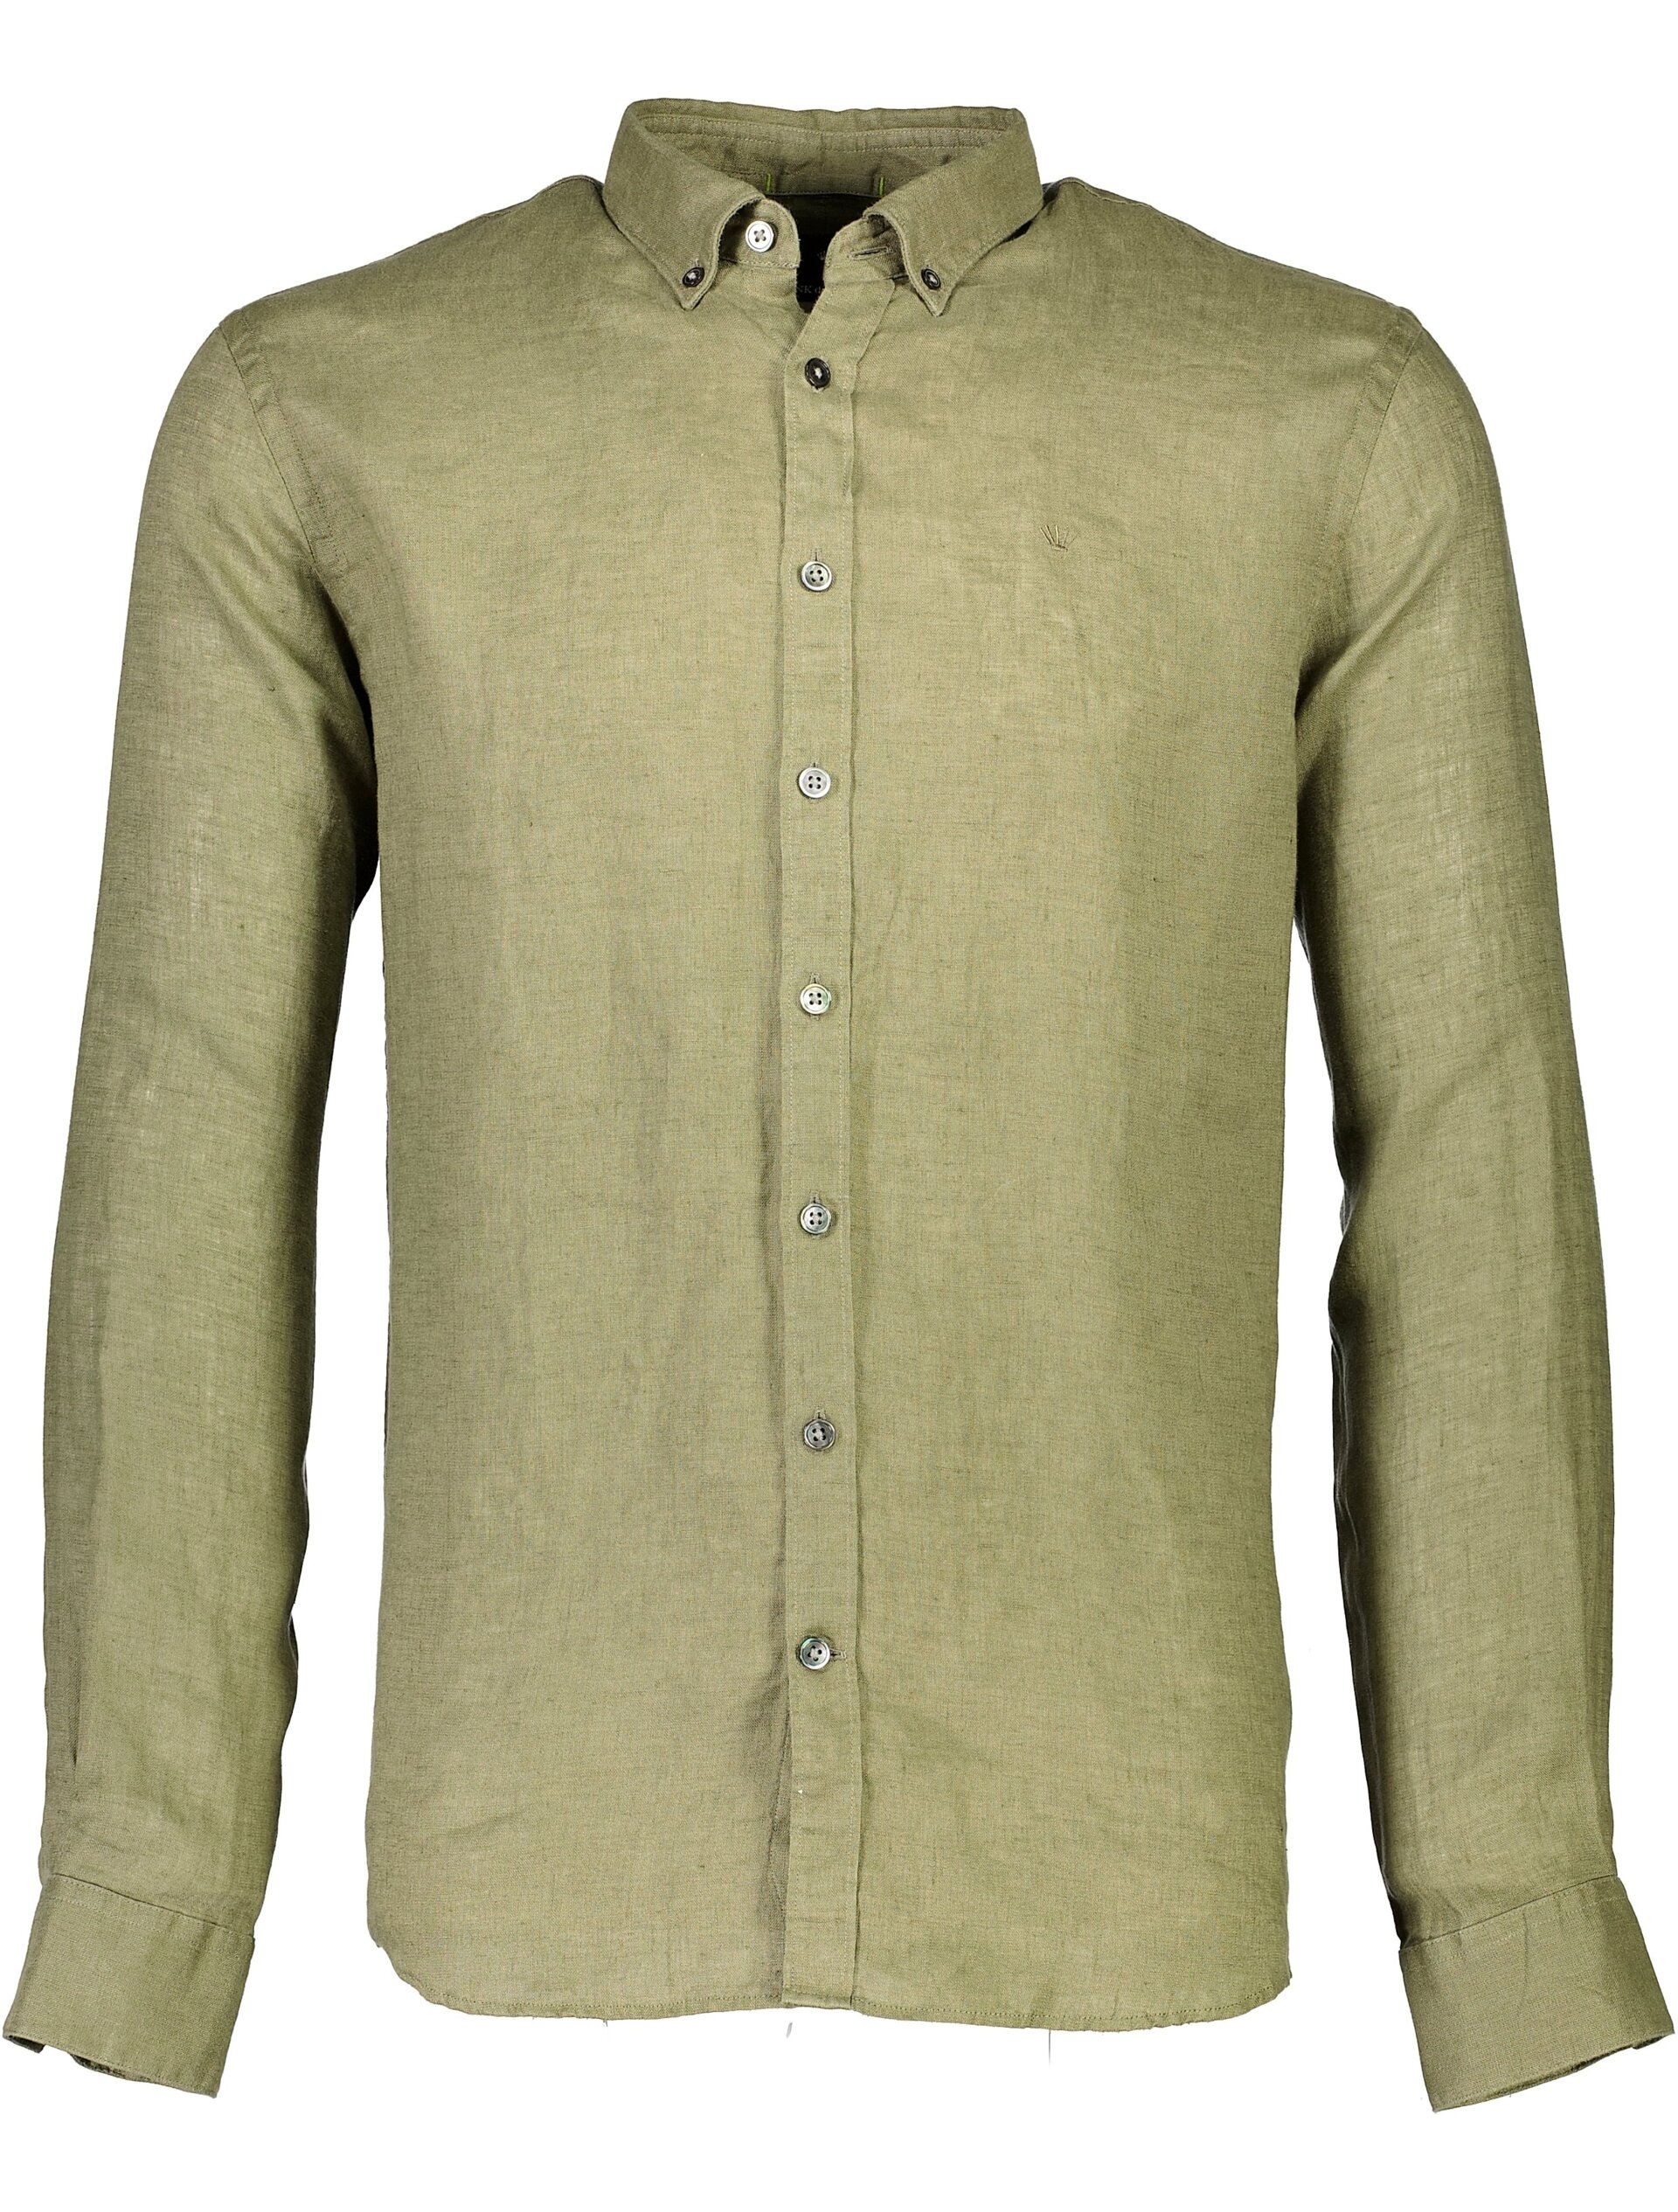 Junk de Luxe Linen shirt green / lt dusty army